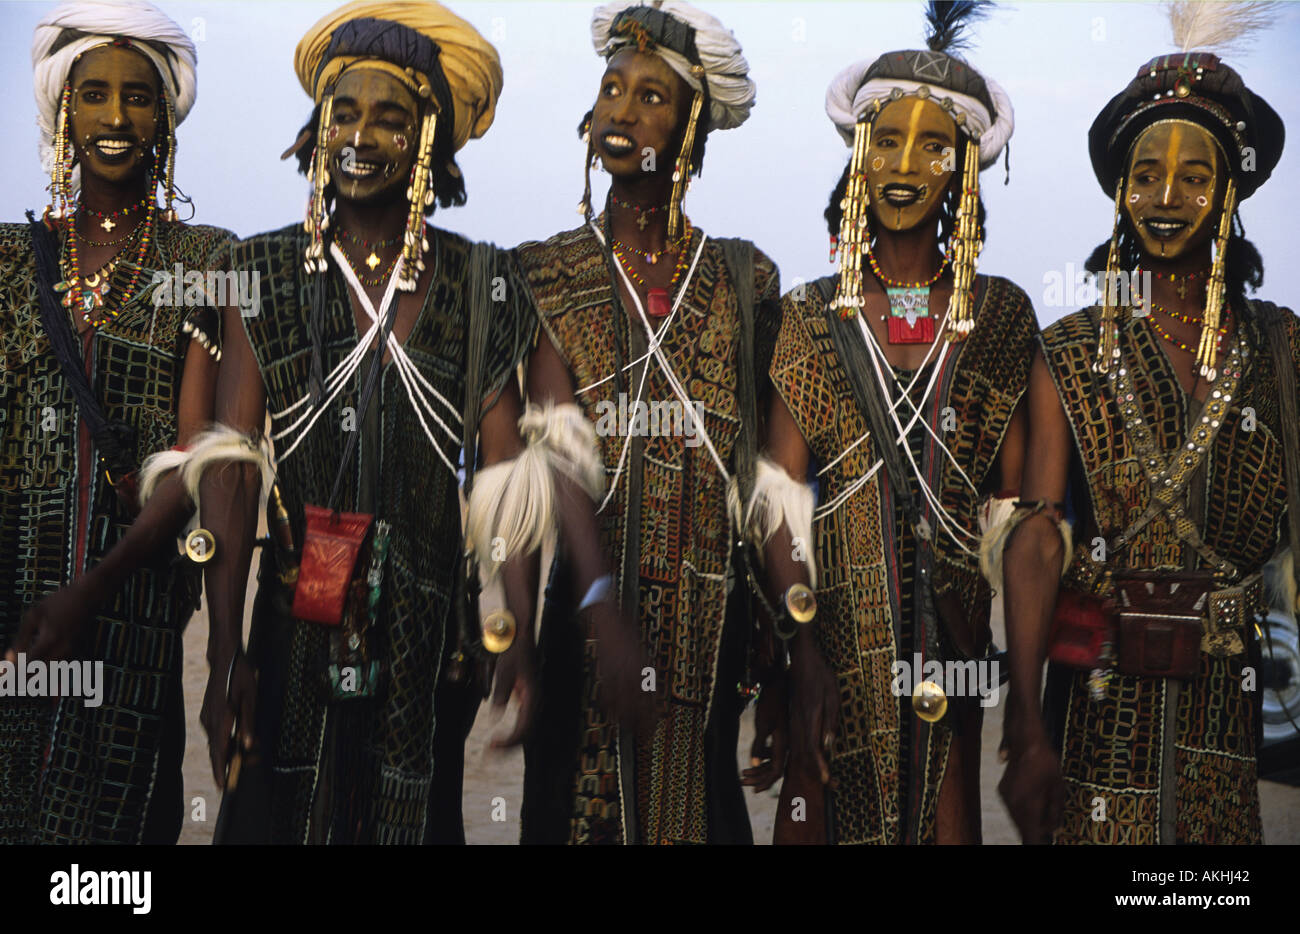 Tribu wodaabes, Cure Sallée Festival, près de ingall, Niger, Afrique de l'Ouest Banque D'Images